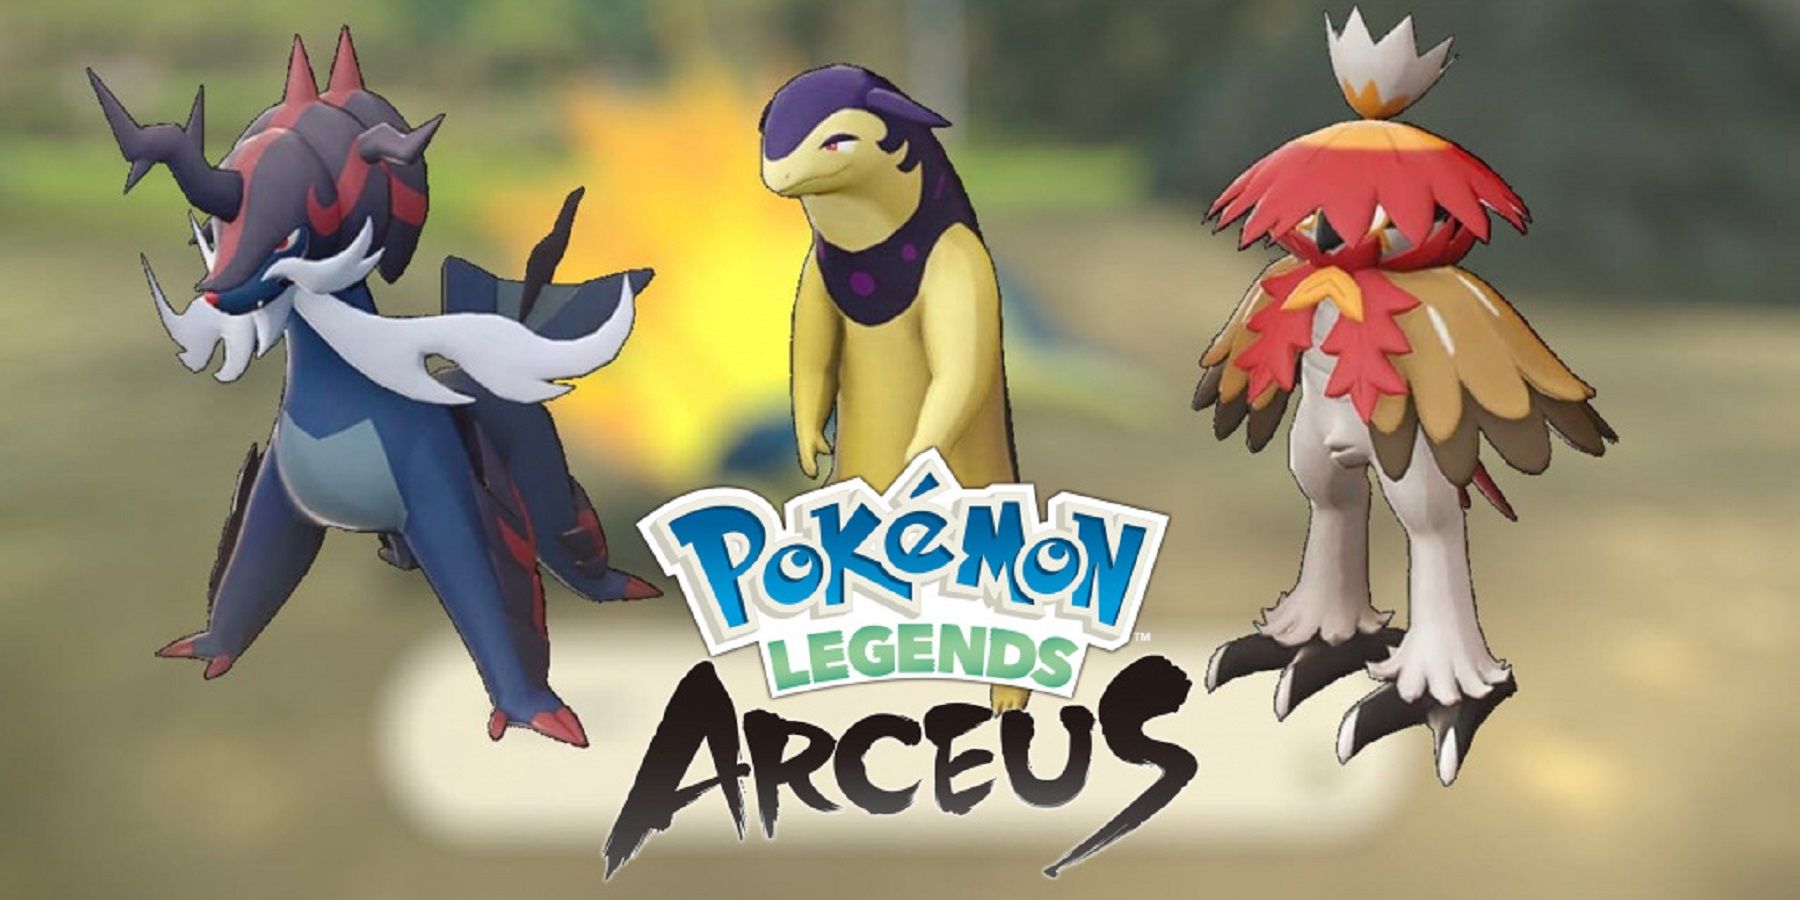 Pokemon Legends: Arceus – Les évolutions finales des démarreurs hisuiens peuvent faire référence à certains PNJ